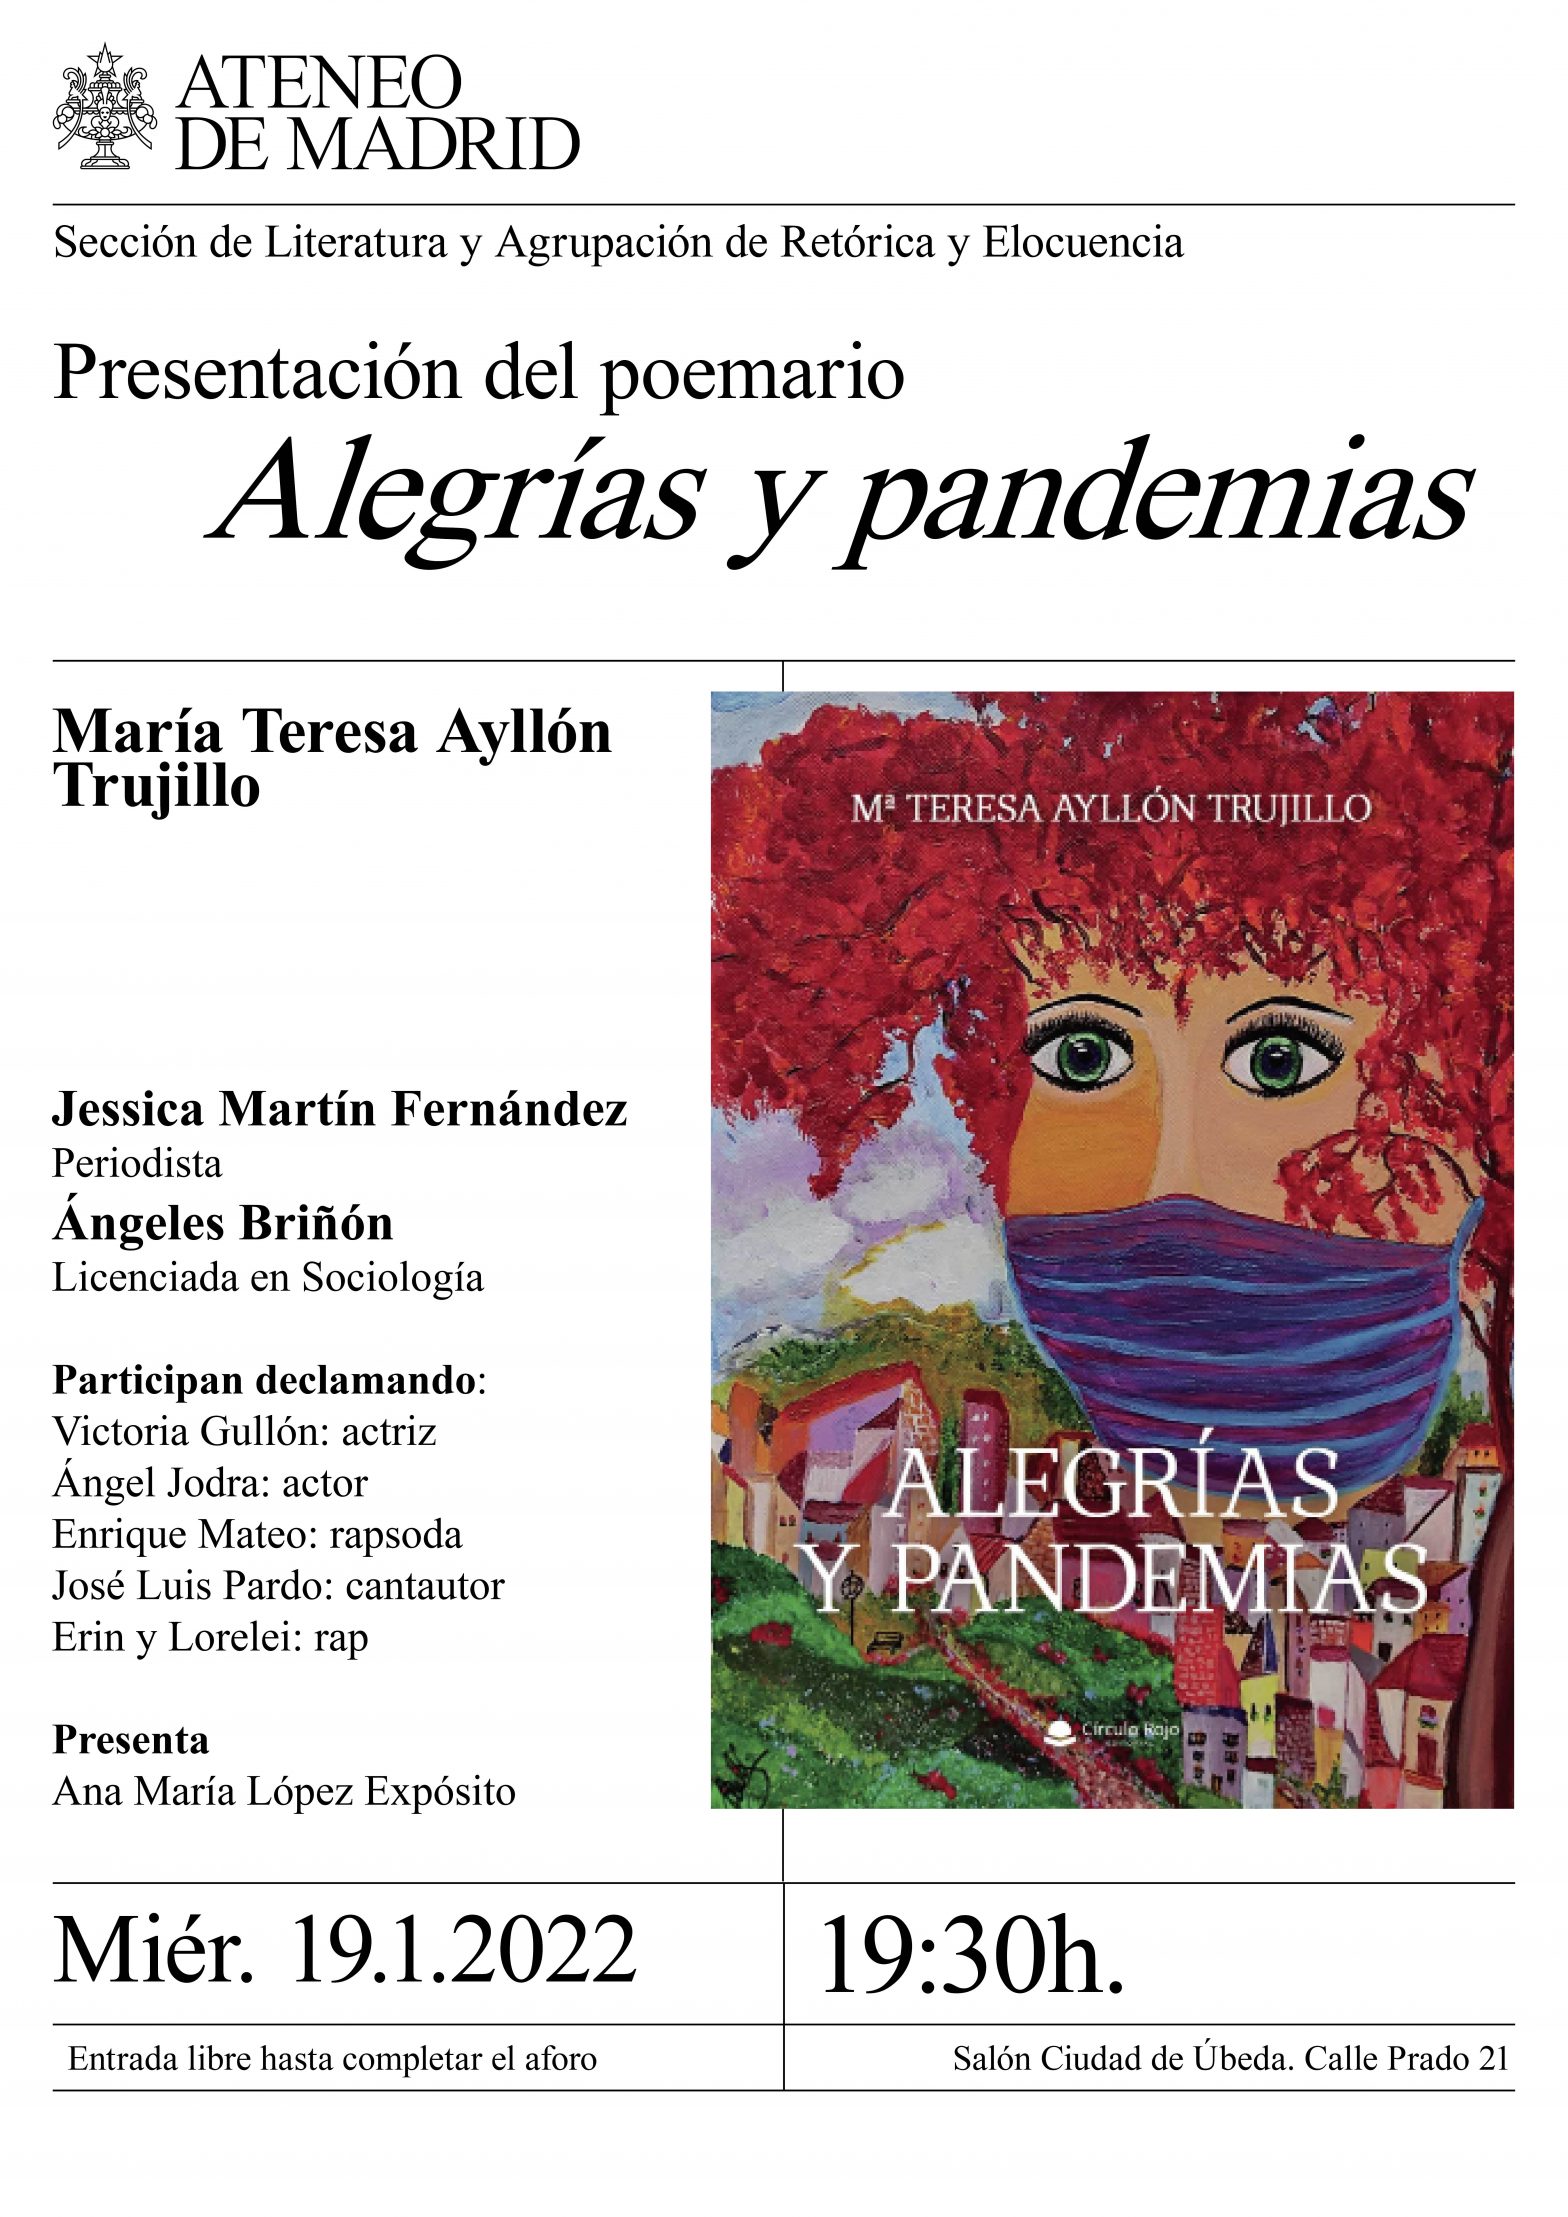 Presentación del poemario: Alegrías y pandemias, de María Teresa Ayllón Trujillo